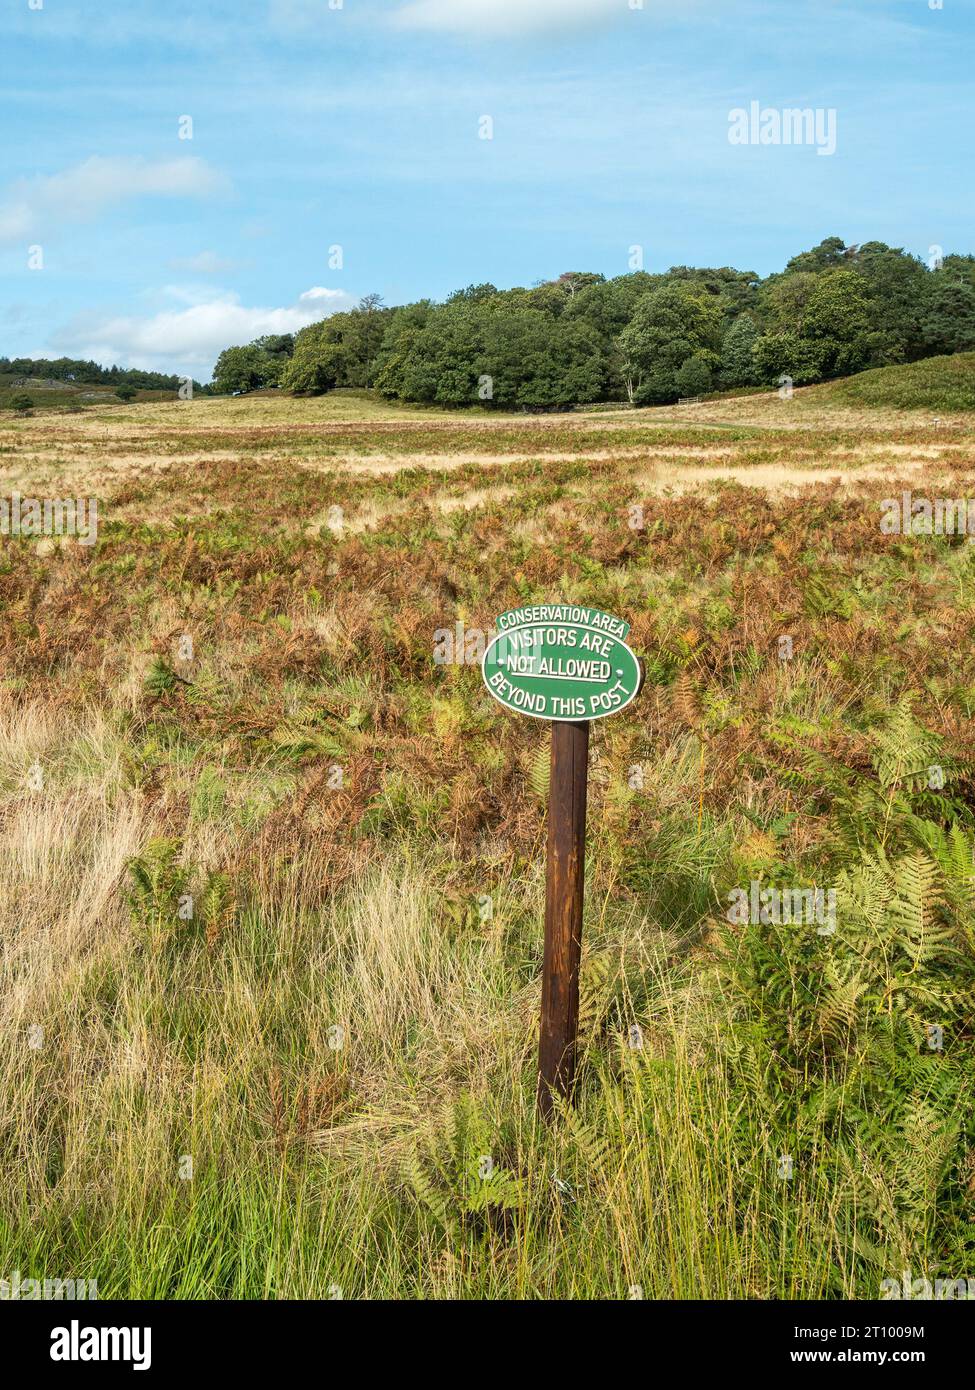 Schutzgebiet-Schild. Besucher sind über diesen Punkt hinaus nicht erlaubt. Bradgate Park, Leicestershire, England, Großbritannien Stockfoto